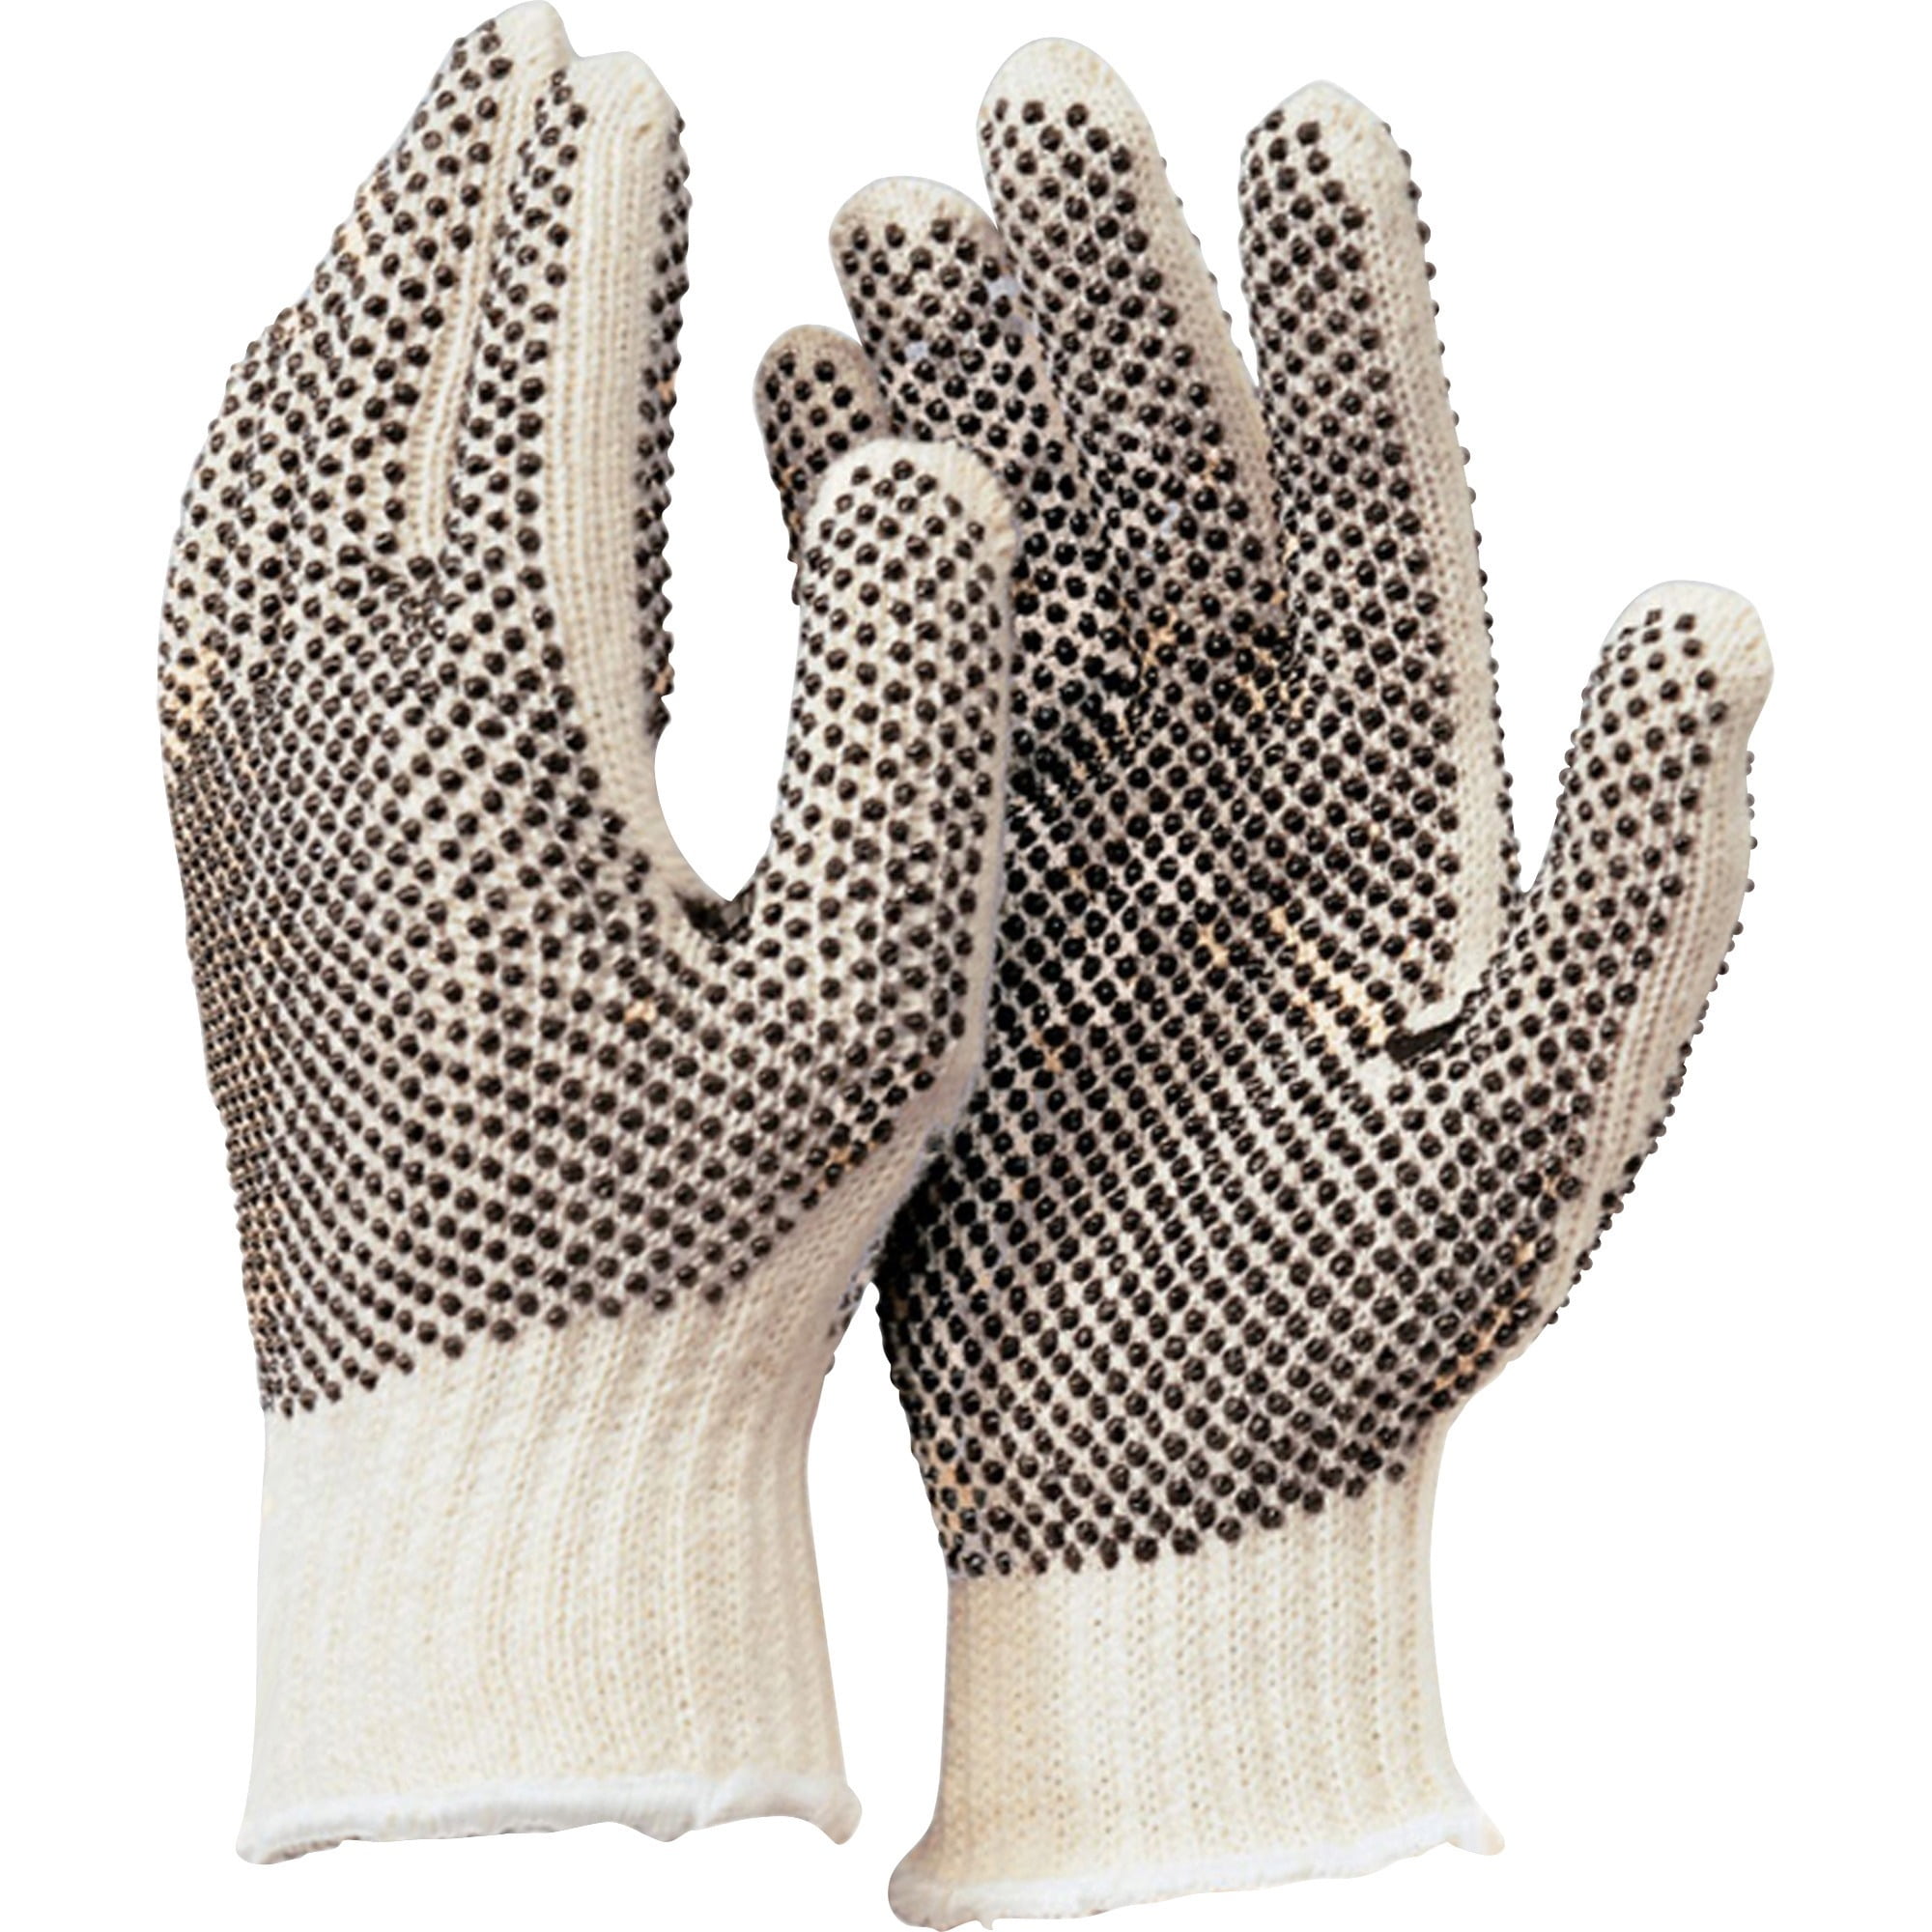 Poly Work ABRASION RESISTANT Gloves Large 1 Pair PVC SURE GRIP Dot Cotton XL 